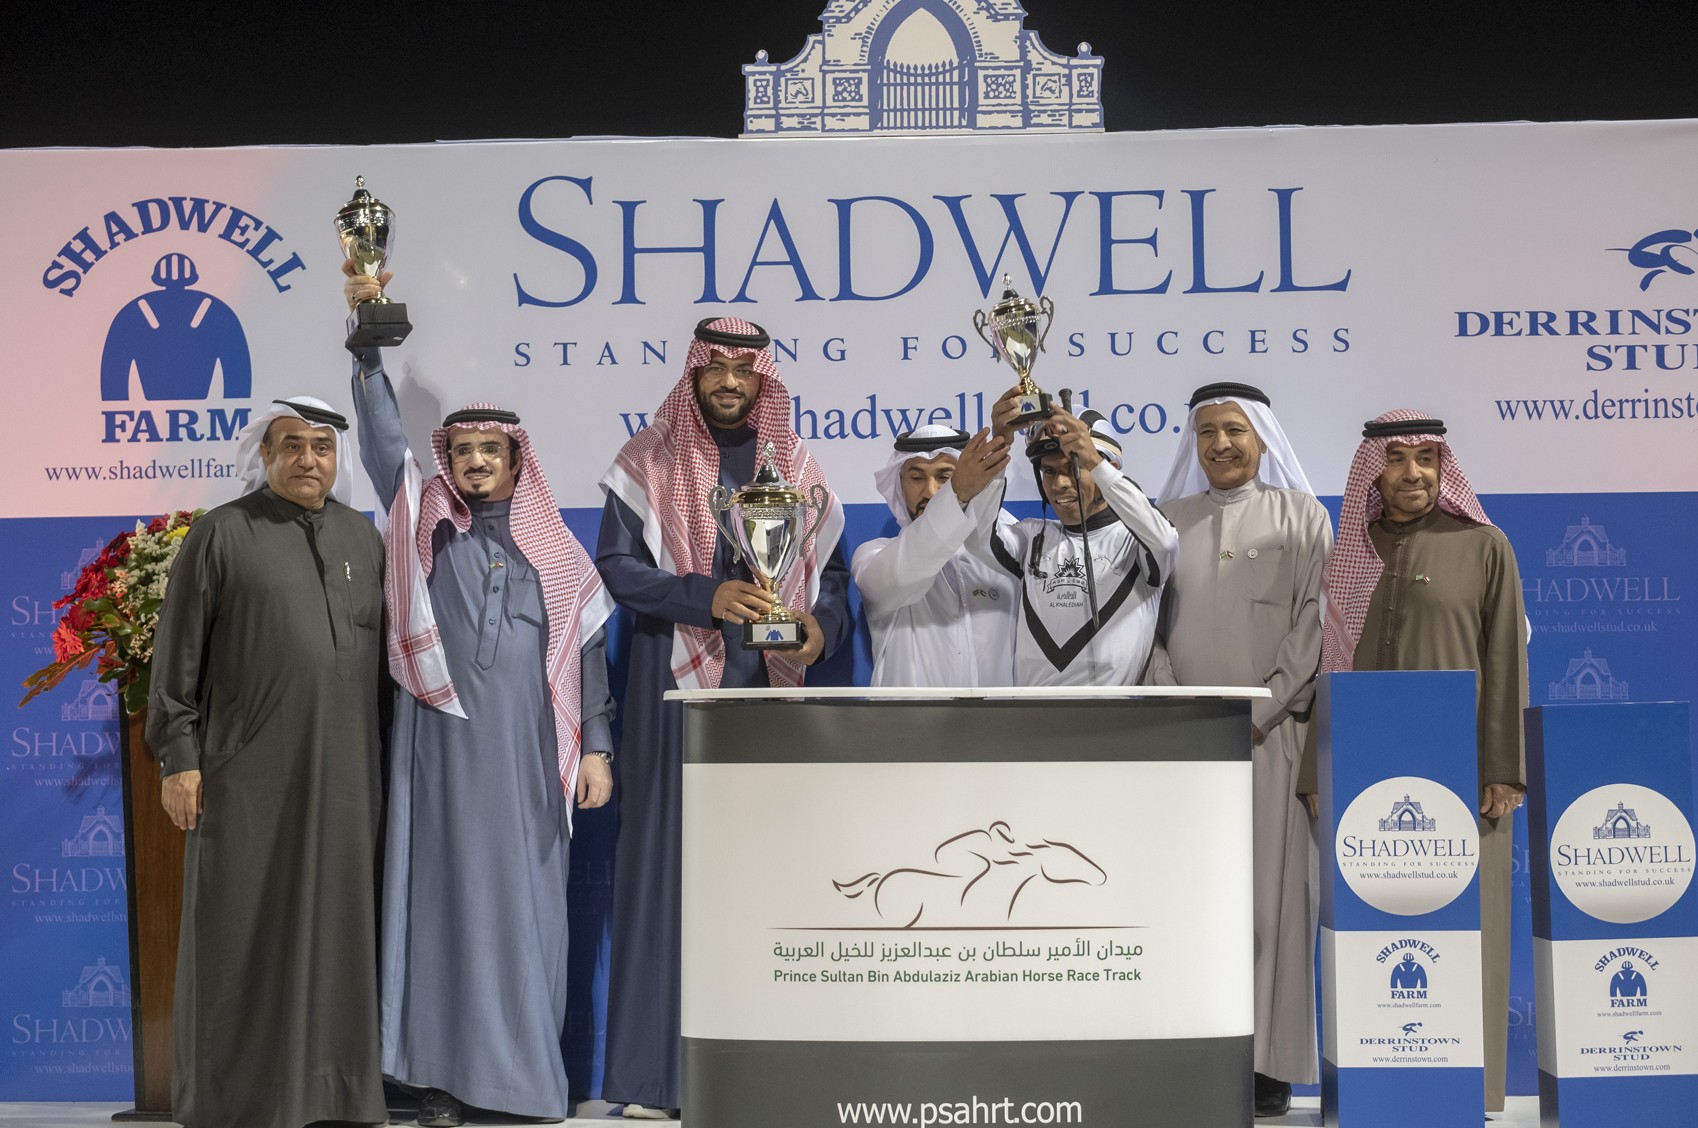 إنطلاقة تاريخية لكرنفال شادويل لسباقات الخيول العربية الأصيلة في السعودية